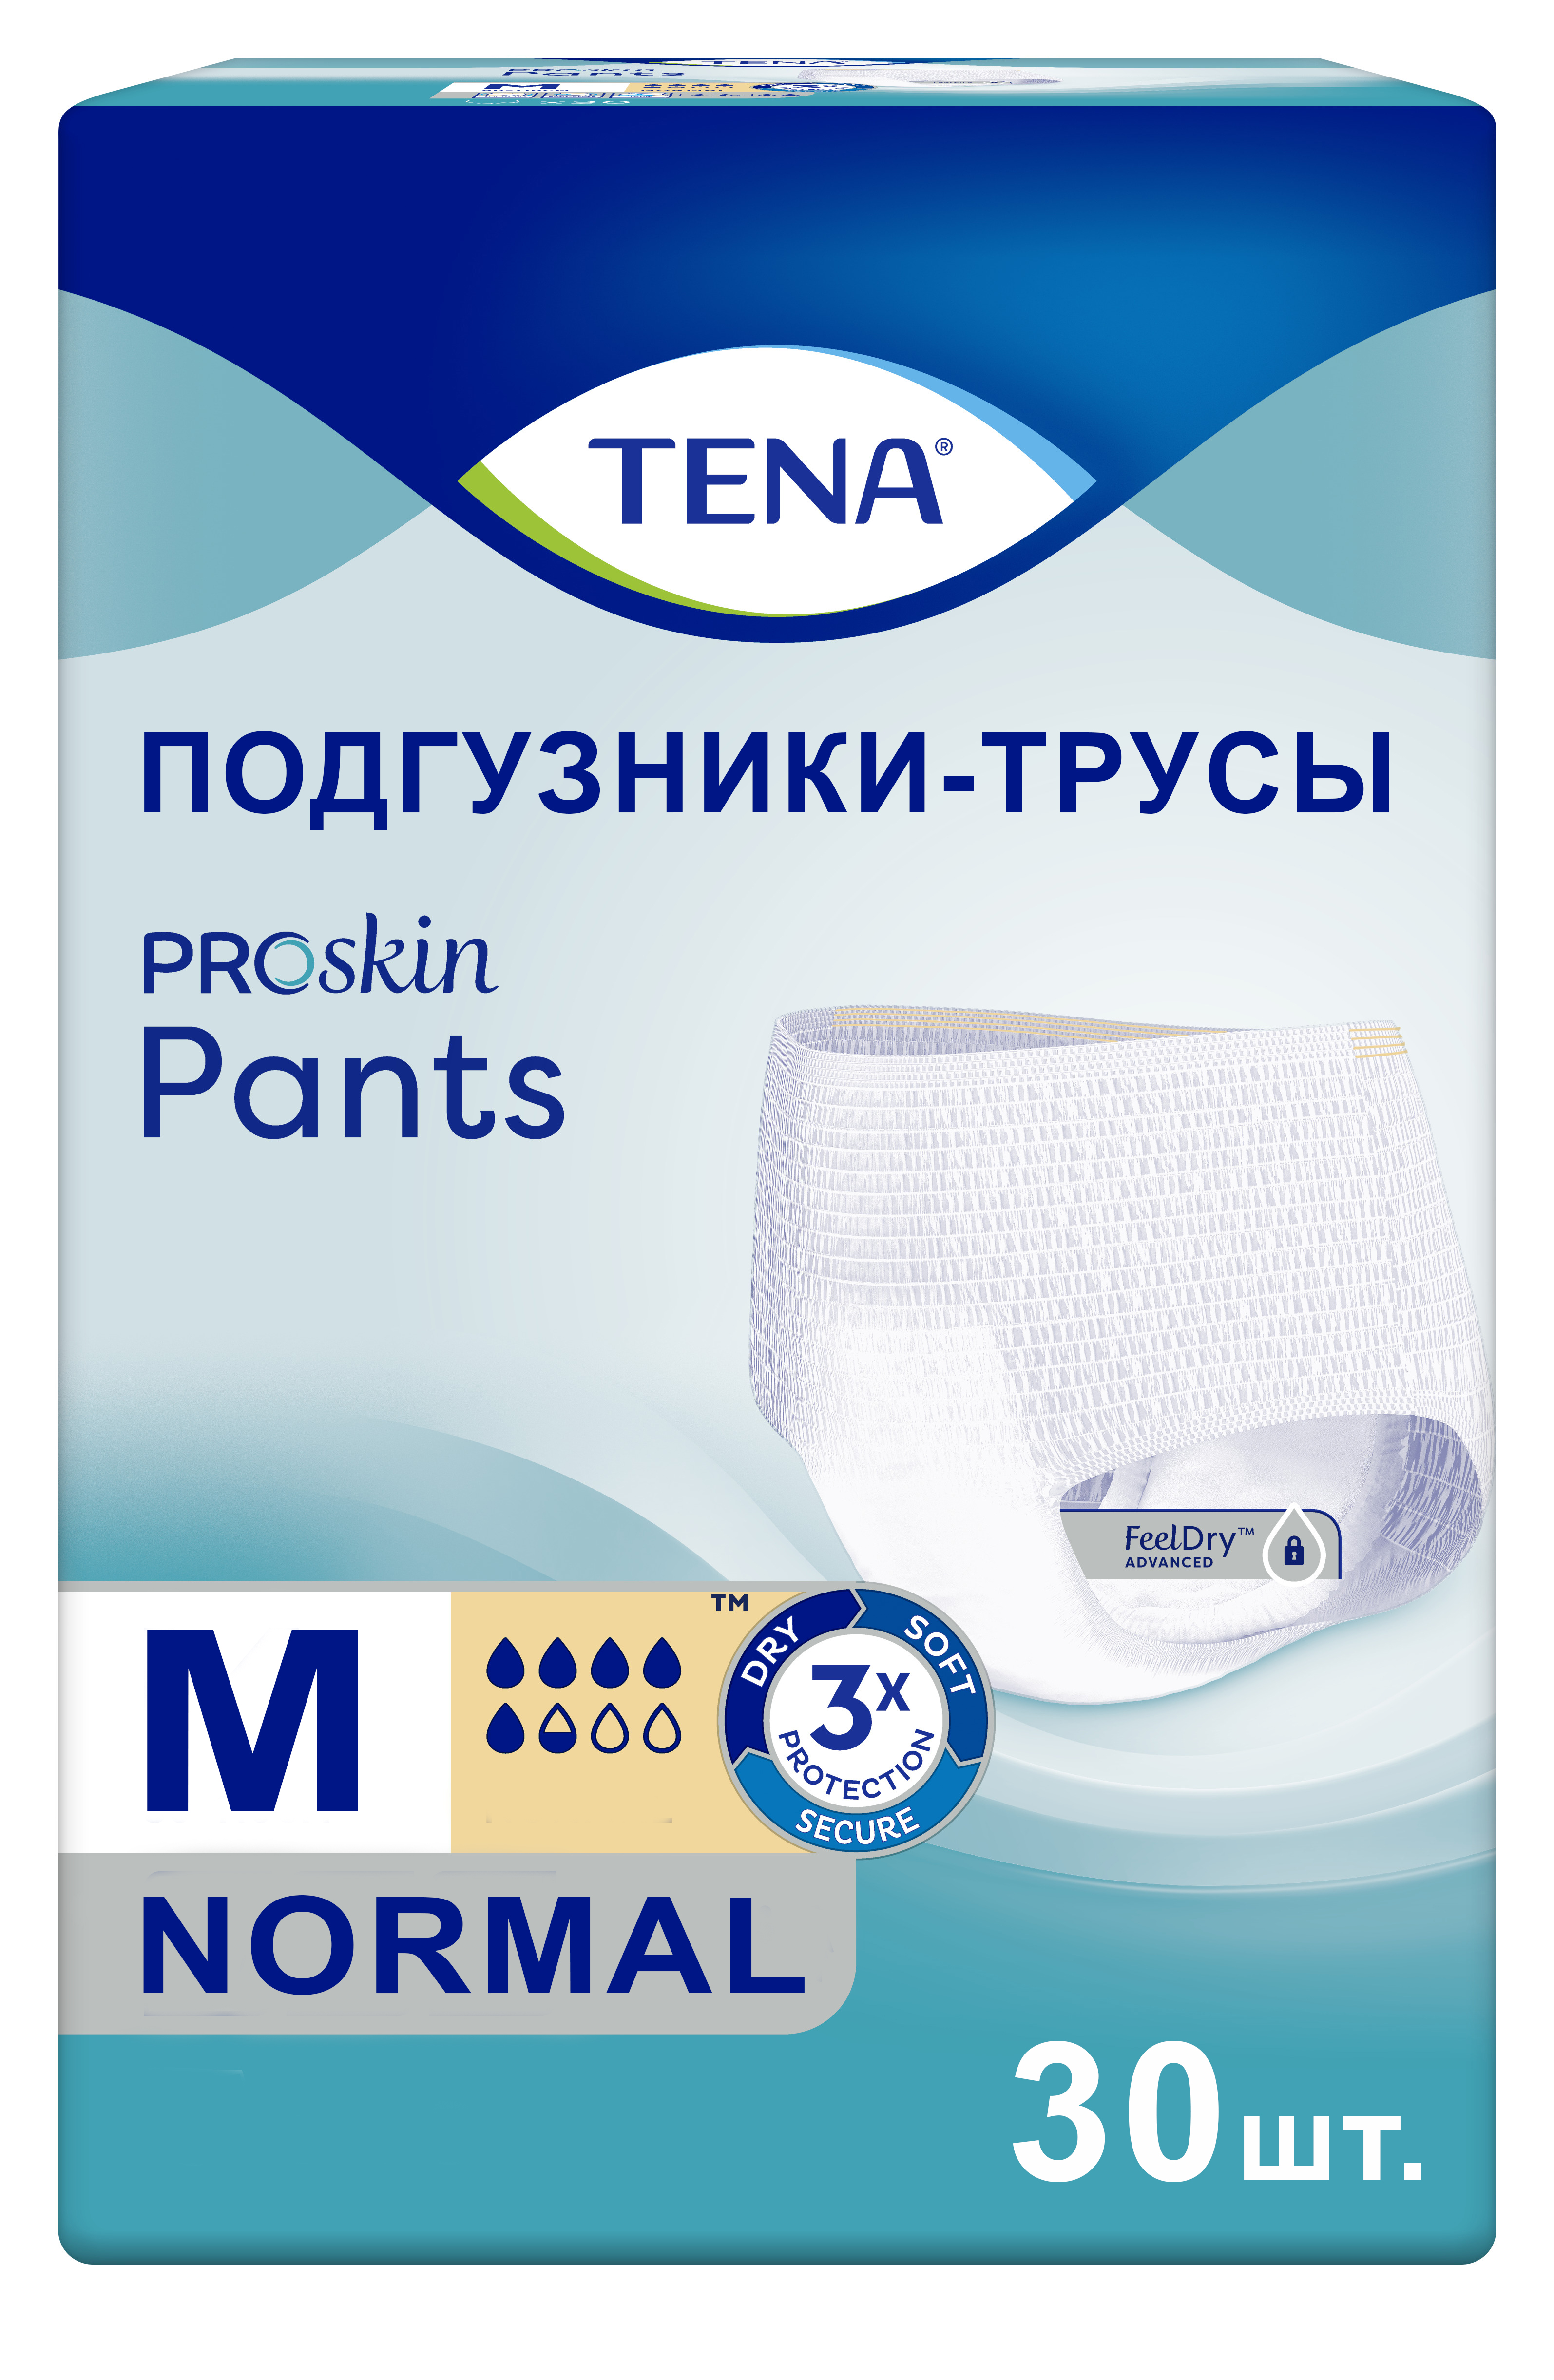 Купить Подгузники для взрослых Tena ProSkin Pants Normal М 30 шт.